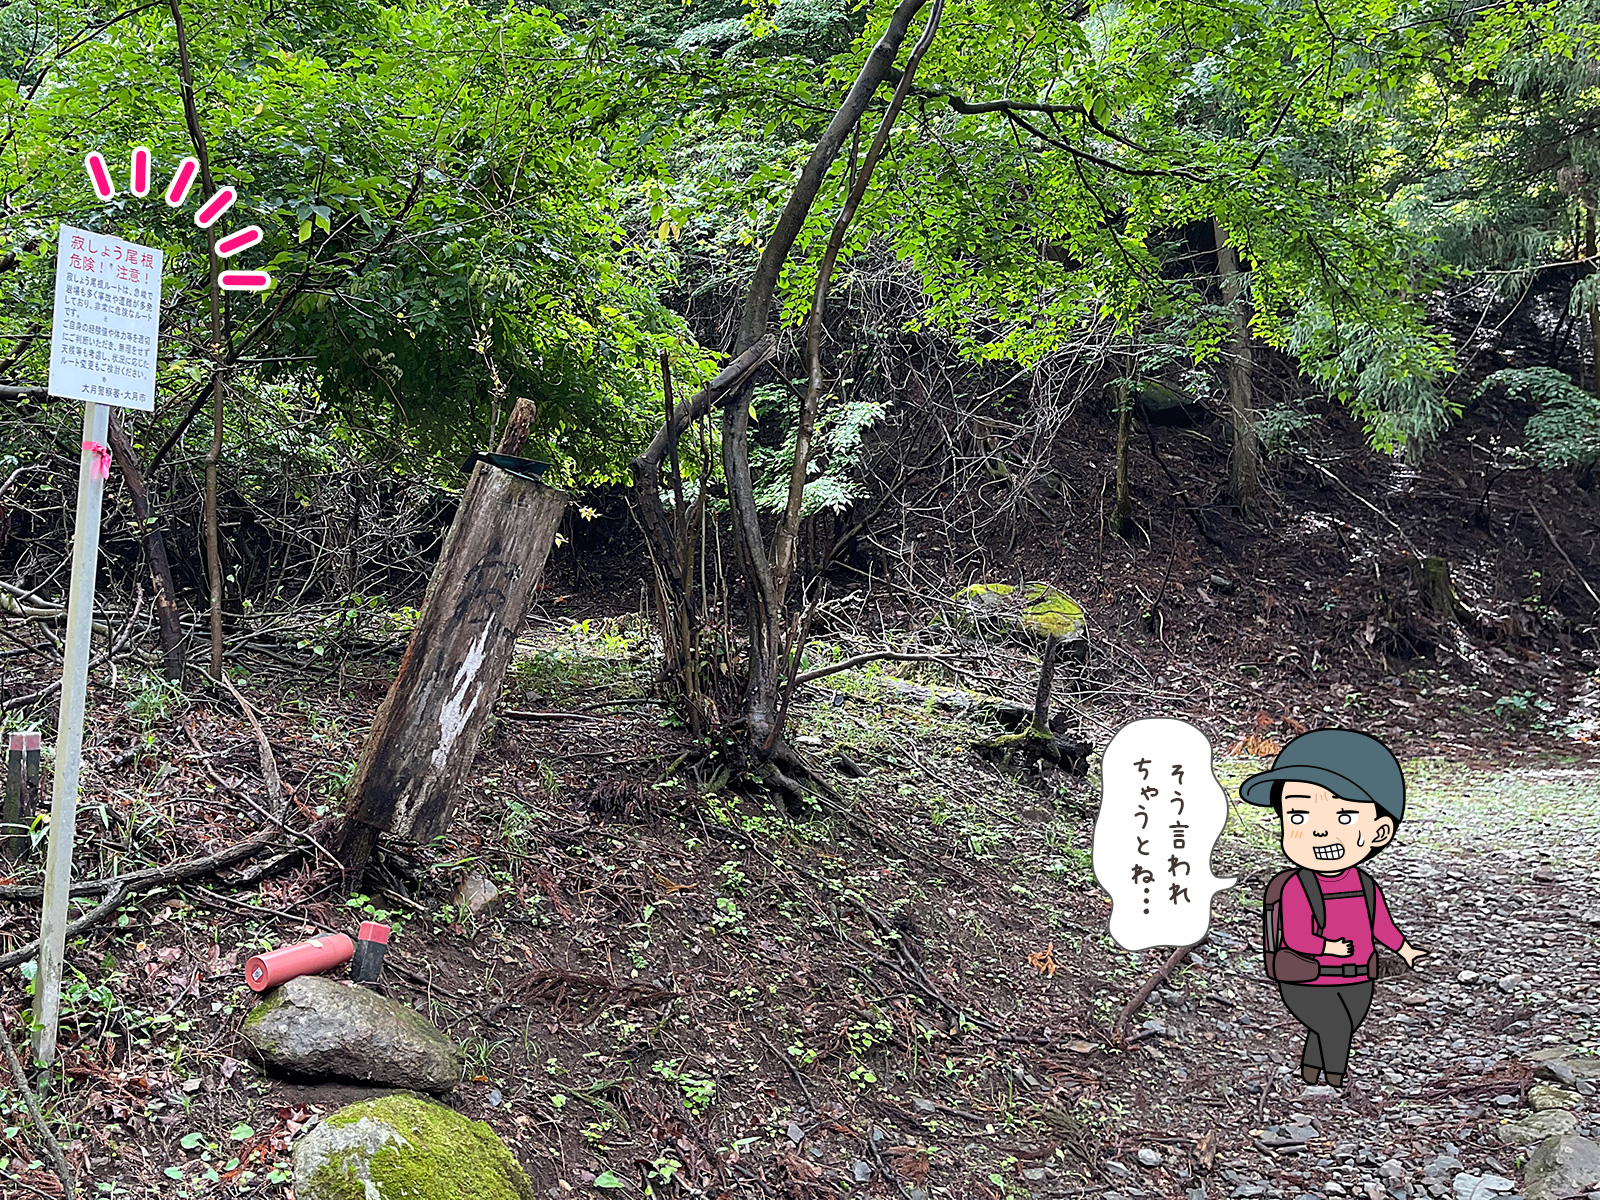 滝子山、寂しょう尾根の分岐点の写真と登山者のイラスト